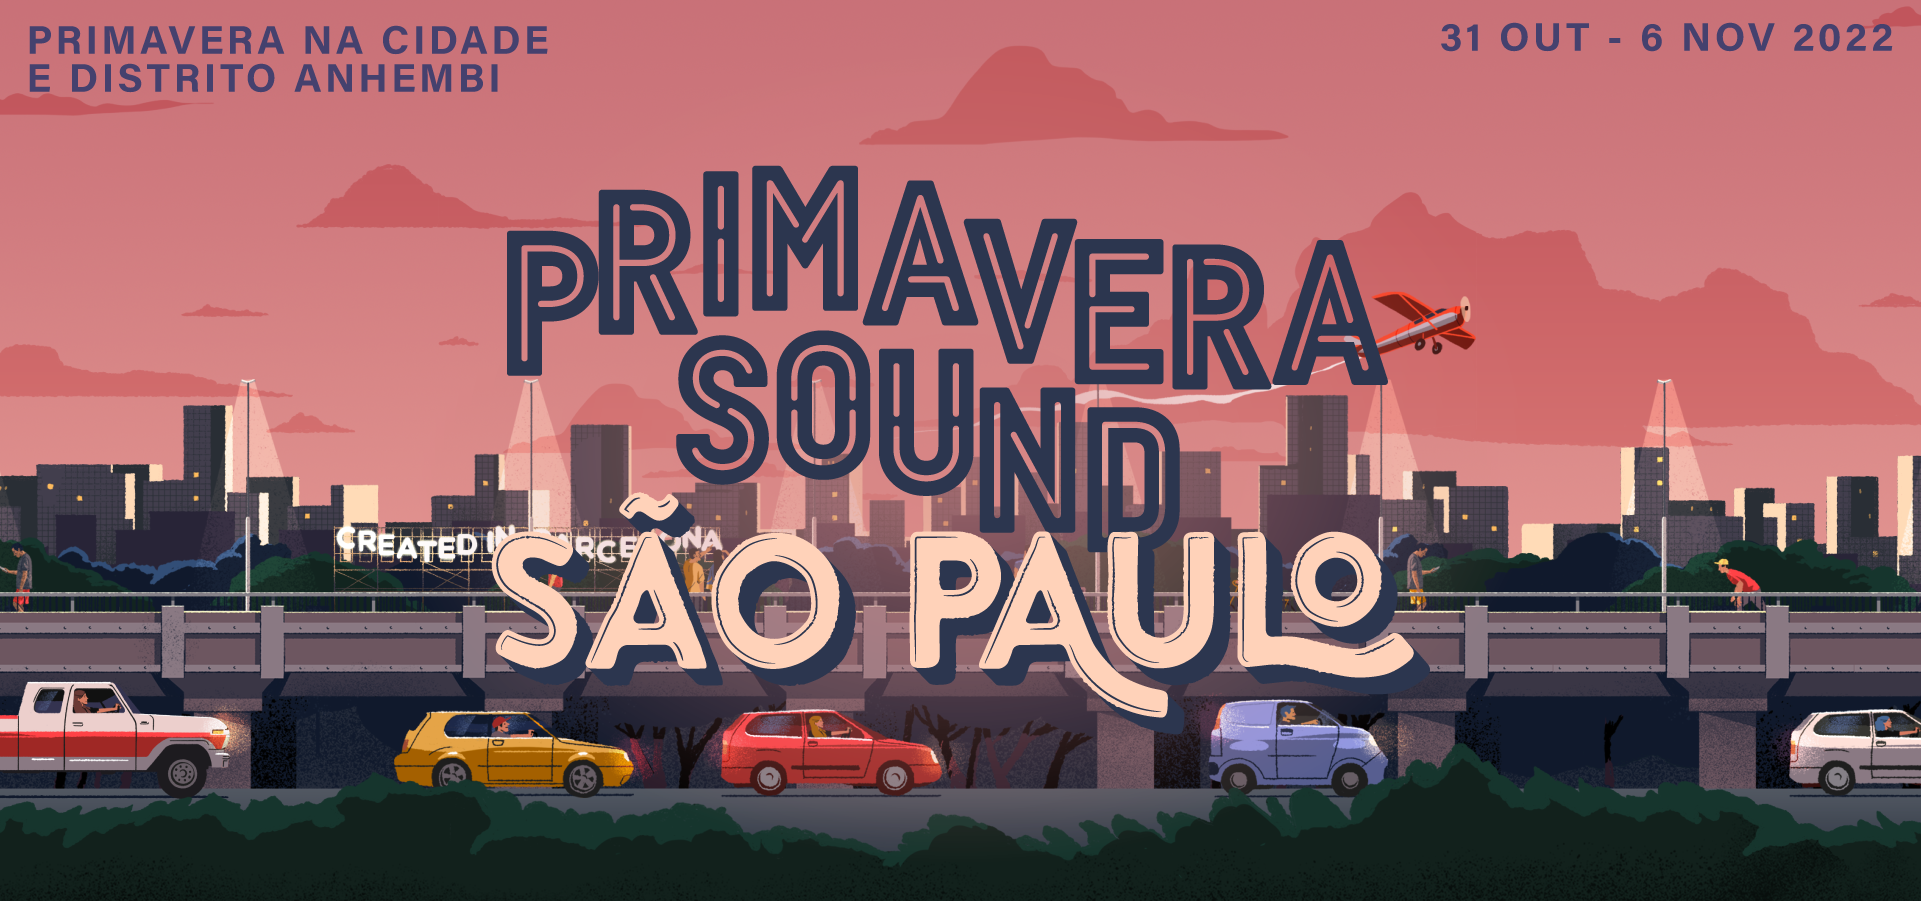 Primavera Sound Sao Paulo 2022 Festival Inspo